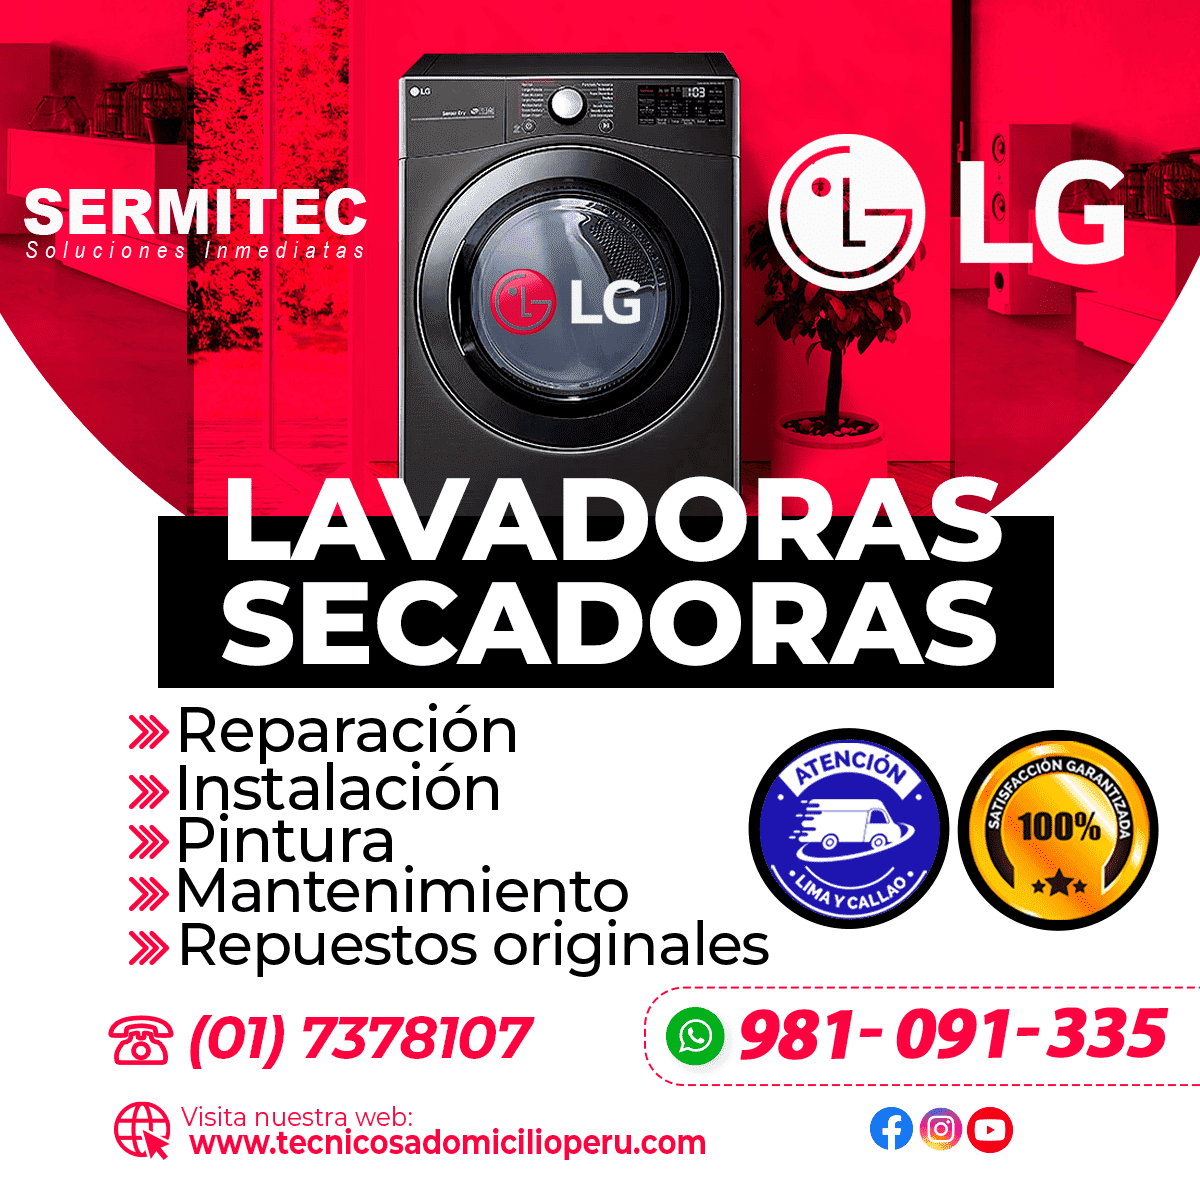 LG Reparacion de Lavadoras 981091335 JESUS MARIA